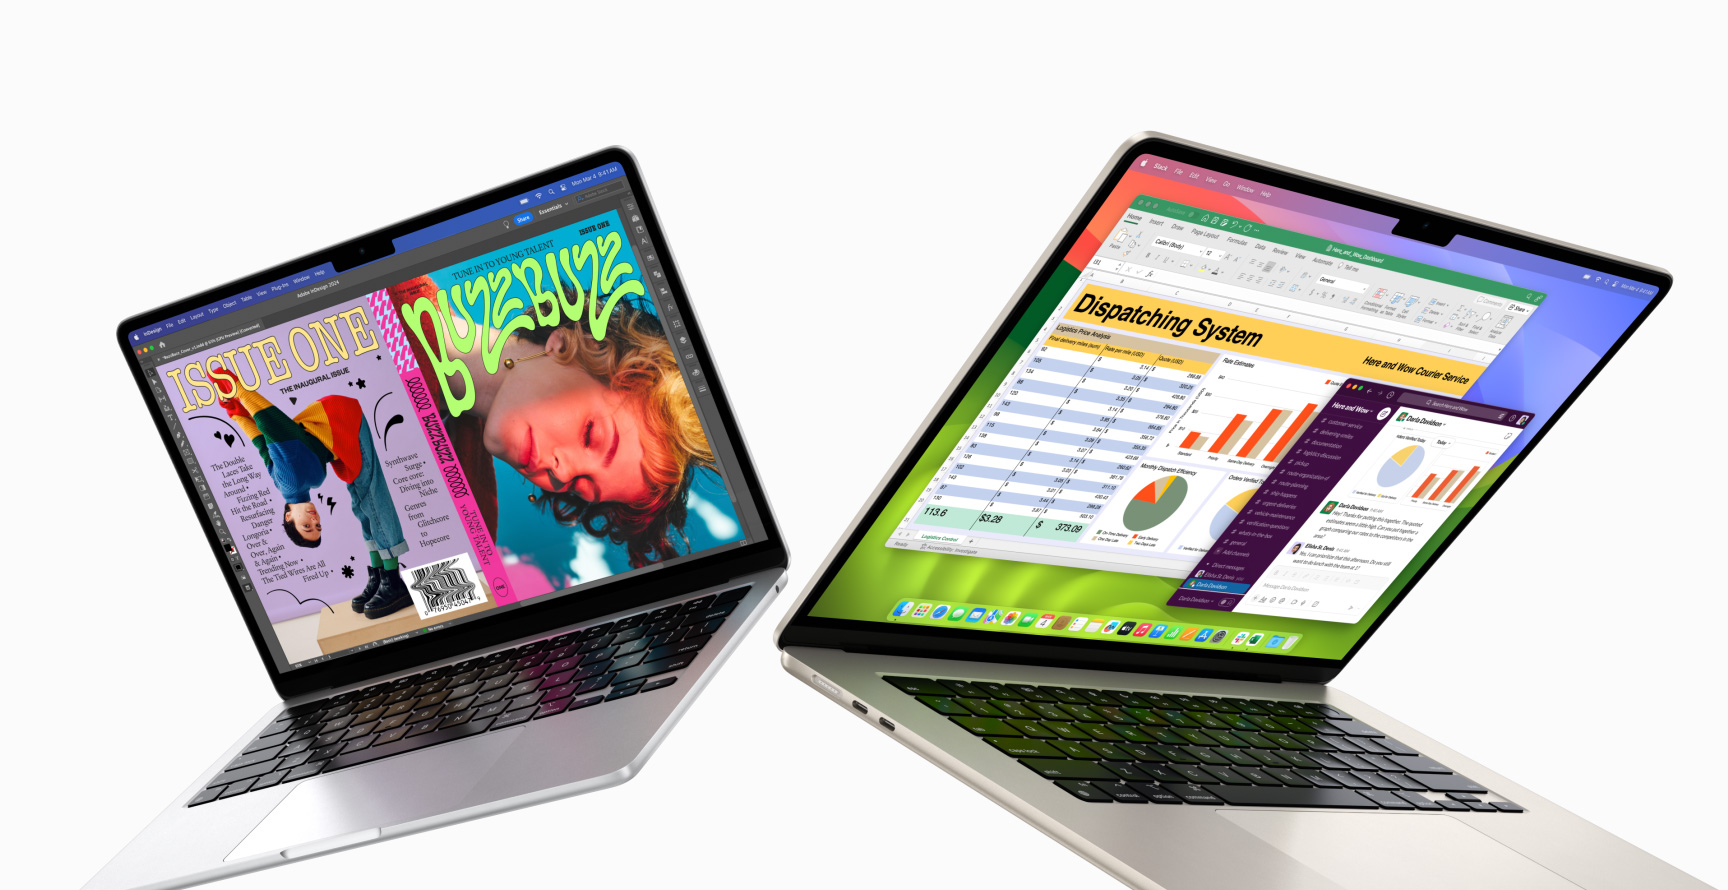 Un MacBook Air de 13 pulgadas a la izquierda y otro de 15 pulgadas a la derecha, ambos semiabiertos. El de 13 pulgadas muestra la llamativa portada de una revista creada con InDesign. El de 15 pulgadas muestra Microsoft Excel y Slack.